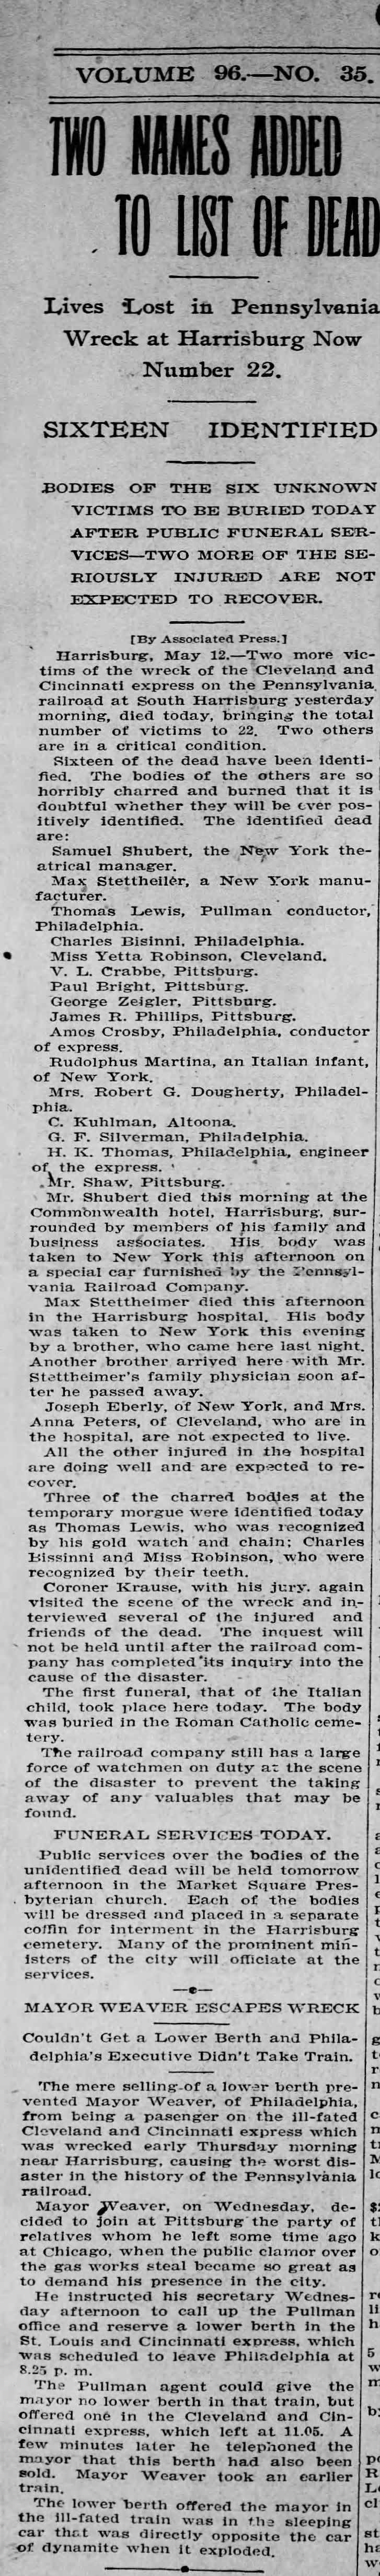 Max Stettheimer dies in train accident in Harrisburg 1905